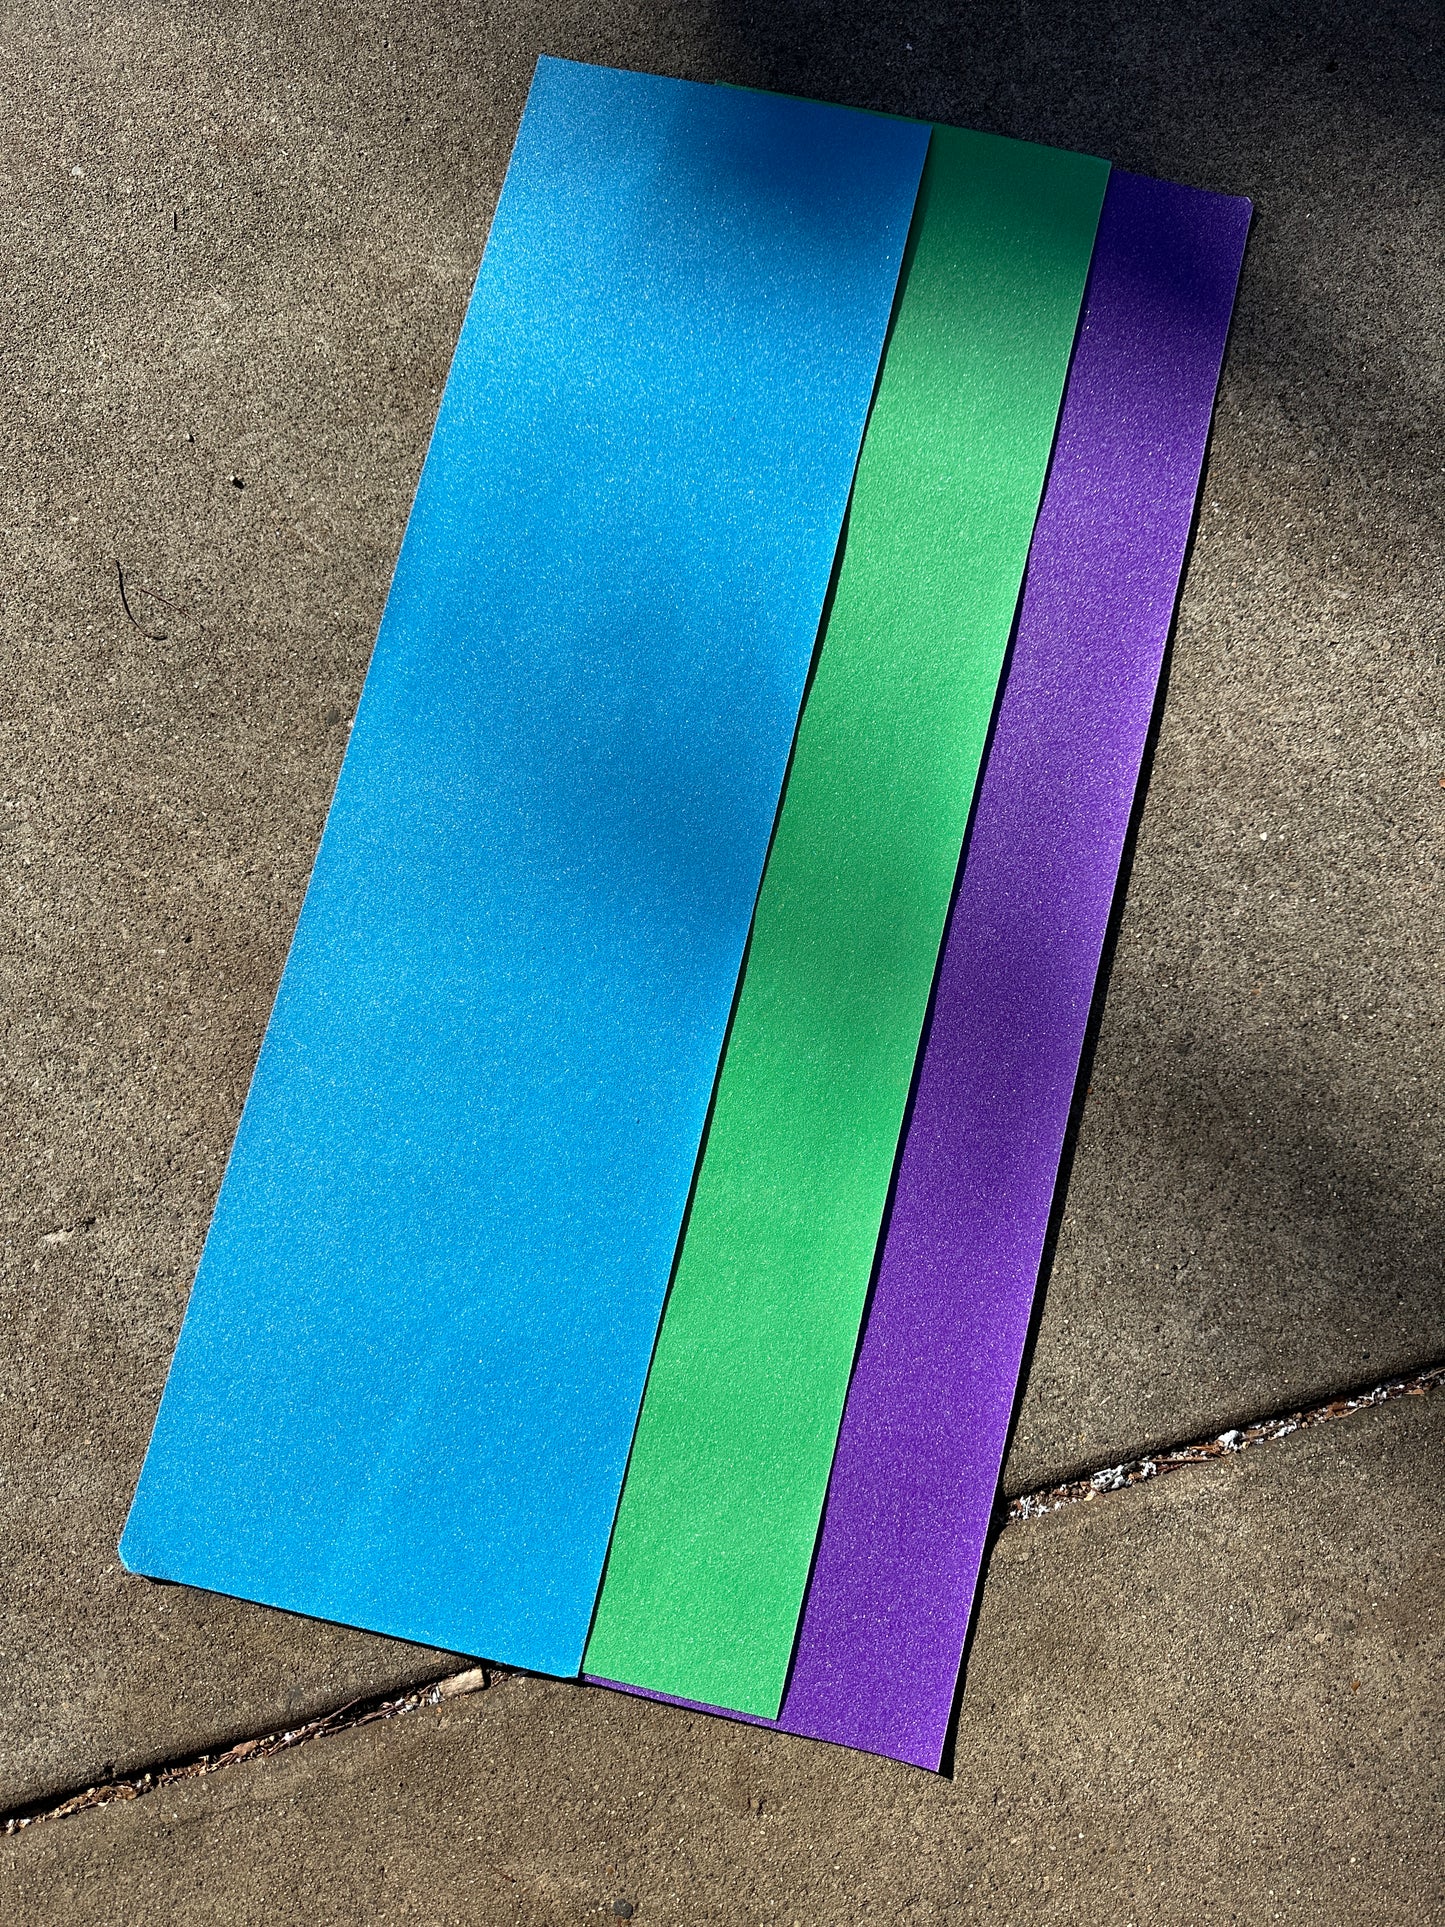 Mob Grip Color Sheets